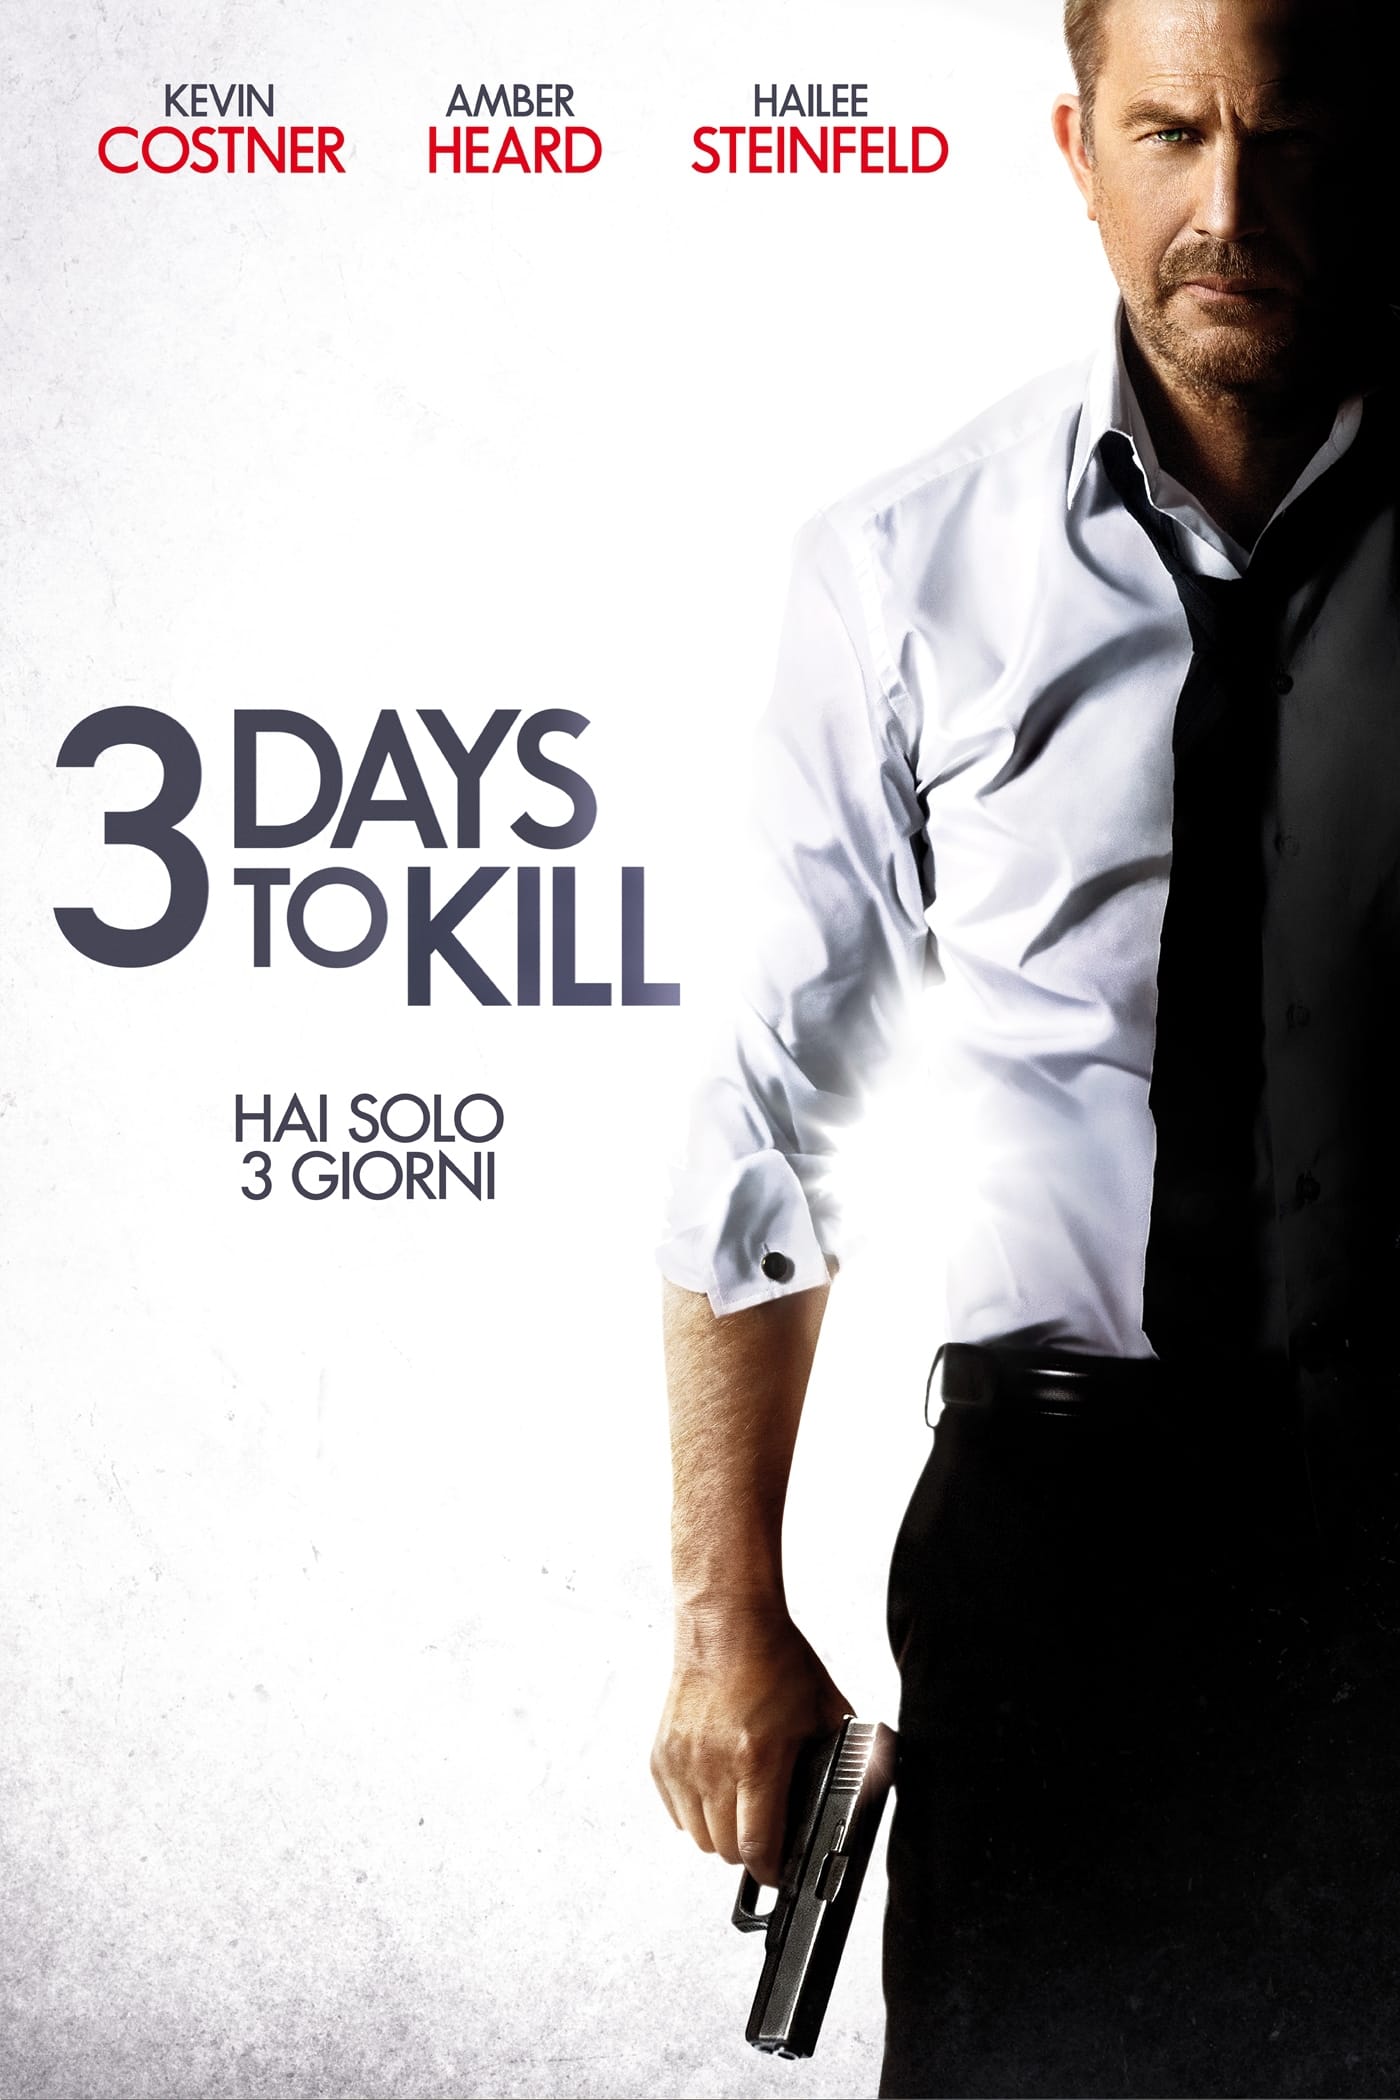 2014 3 Days To Kill